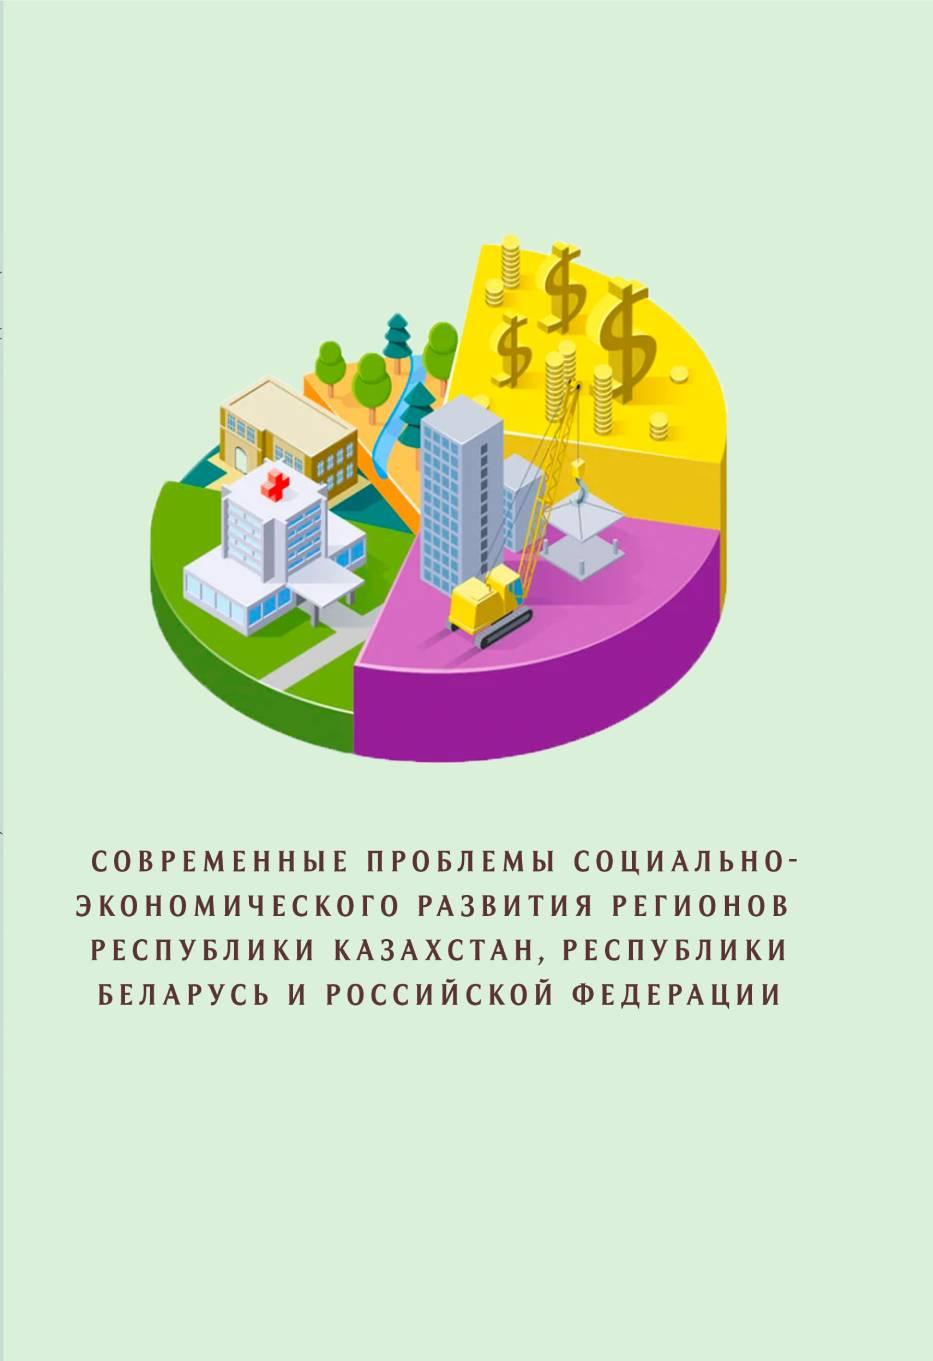 Современные проблемы социально-экономического развития регионов республики Казахстан, республики Беларусь и Российской федерации